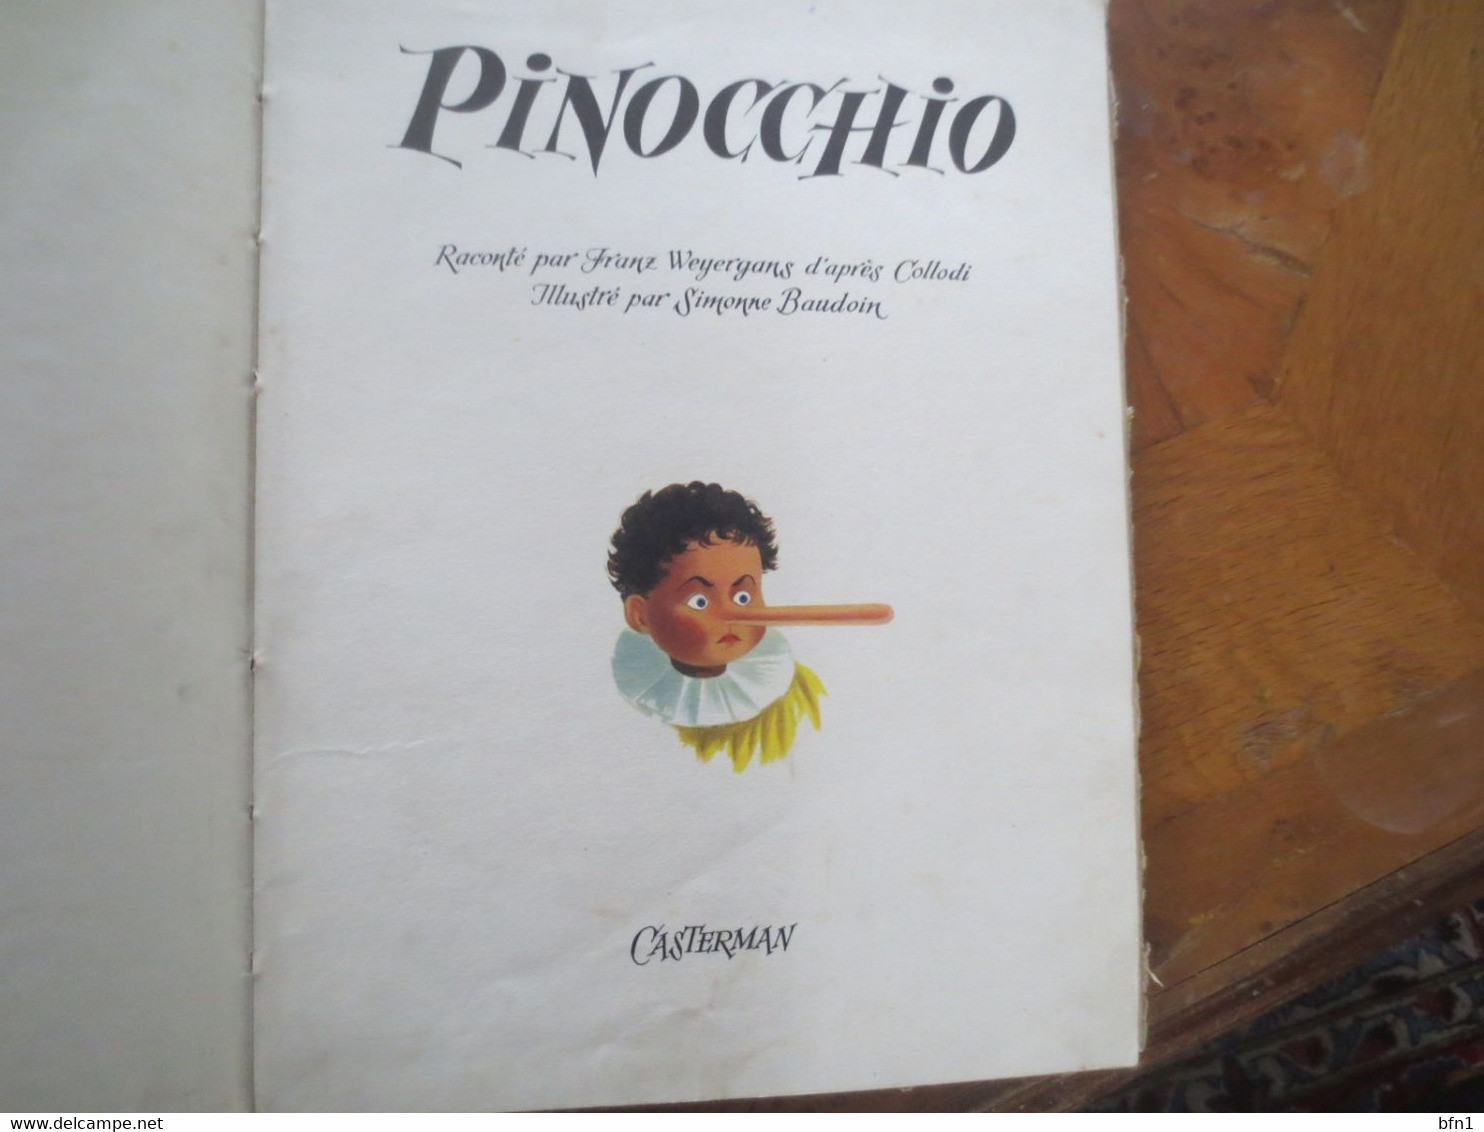 Pinocchio / Casterman 1954 / Toilé / Les Albums De L'age D'or / Collodi -Illustré Par SIMONNE BAUDOIN - Casterman